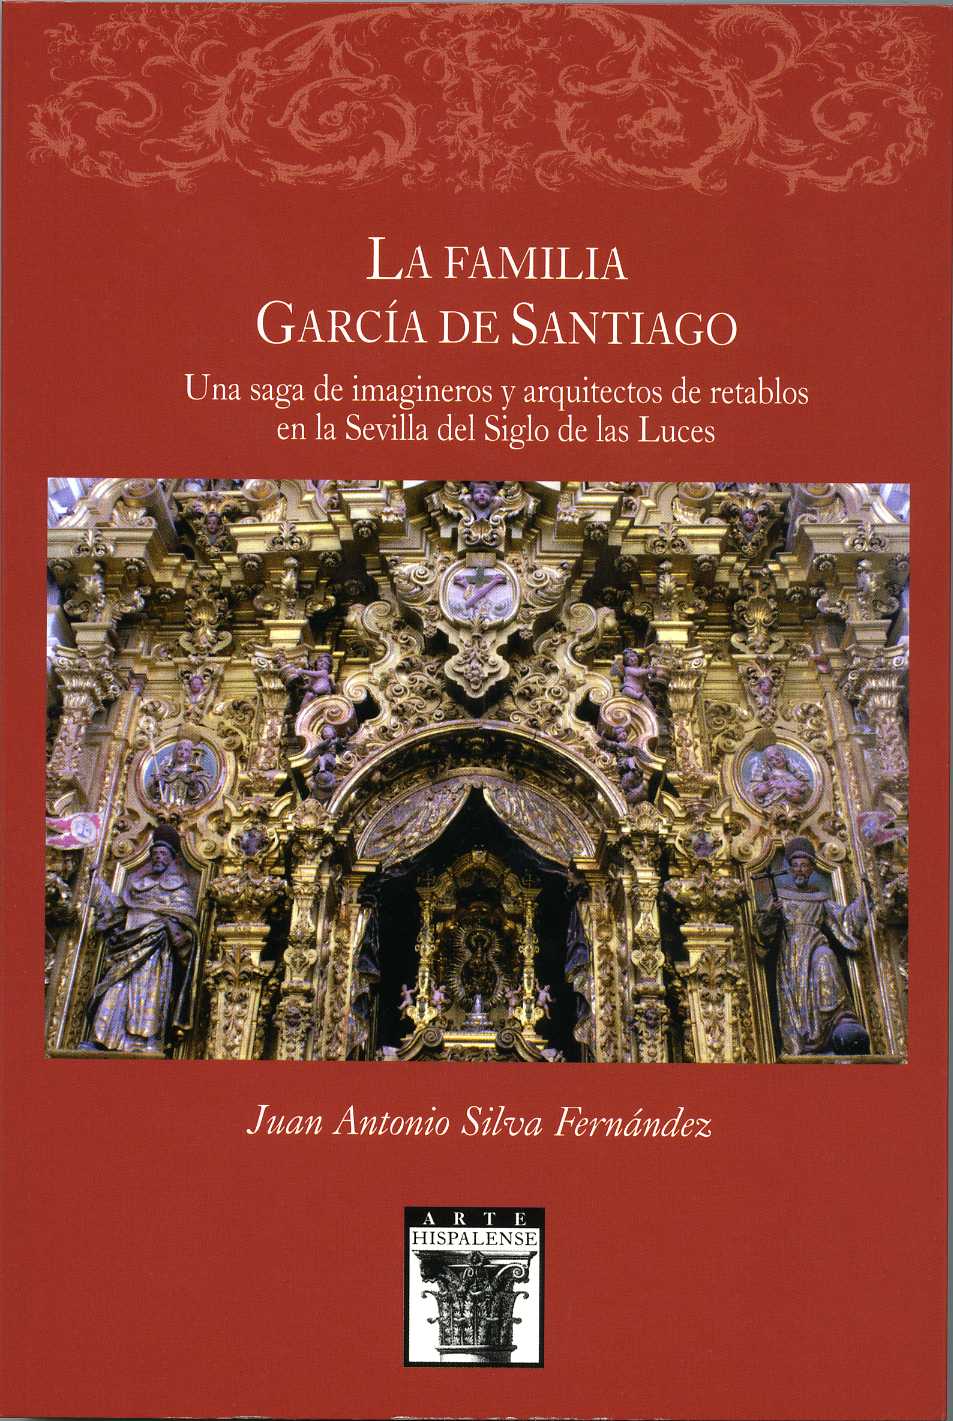 Presentación de libro " La Familia García de Santiago. Una saga de imagineros y arquitectos de retablos en la Sevilla del Siglo de las Luces"